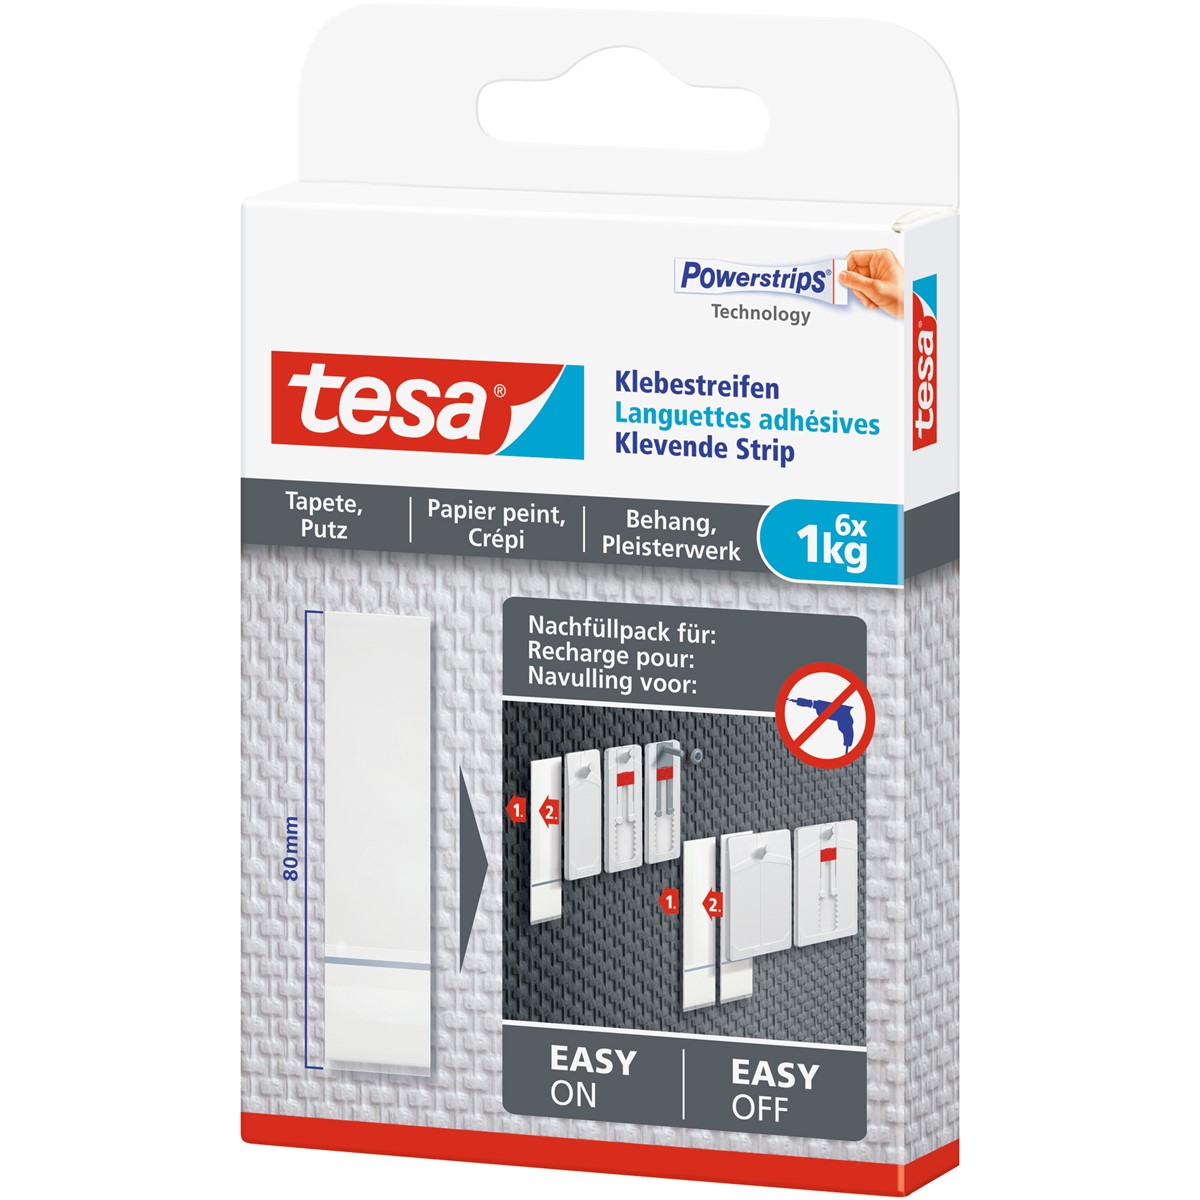 tesa 77771-00000 - Powerstrips - 6 Klebestreifen für Tapeten und Putz, max  1kg